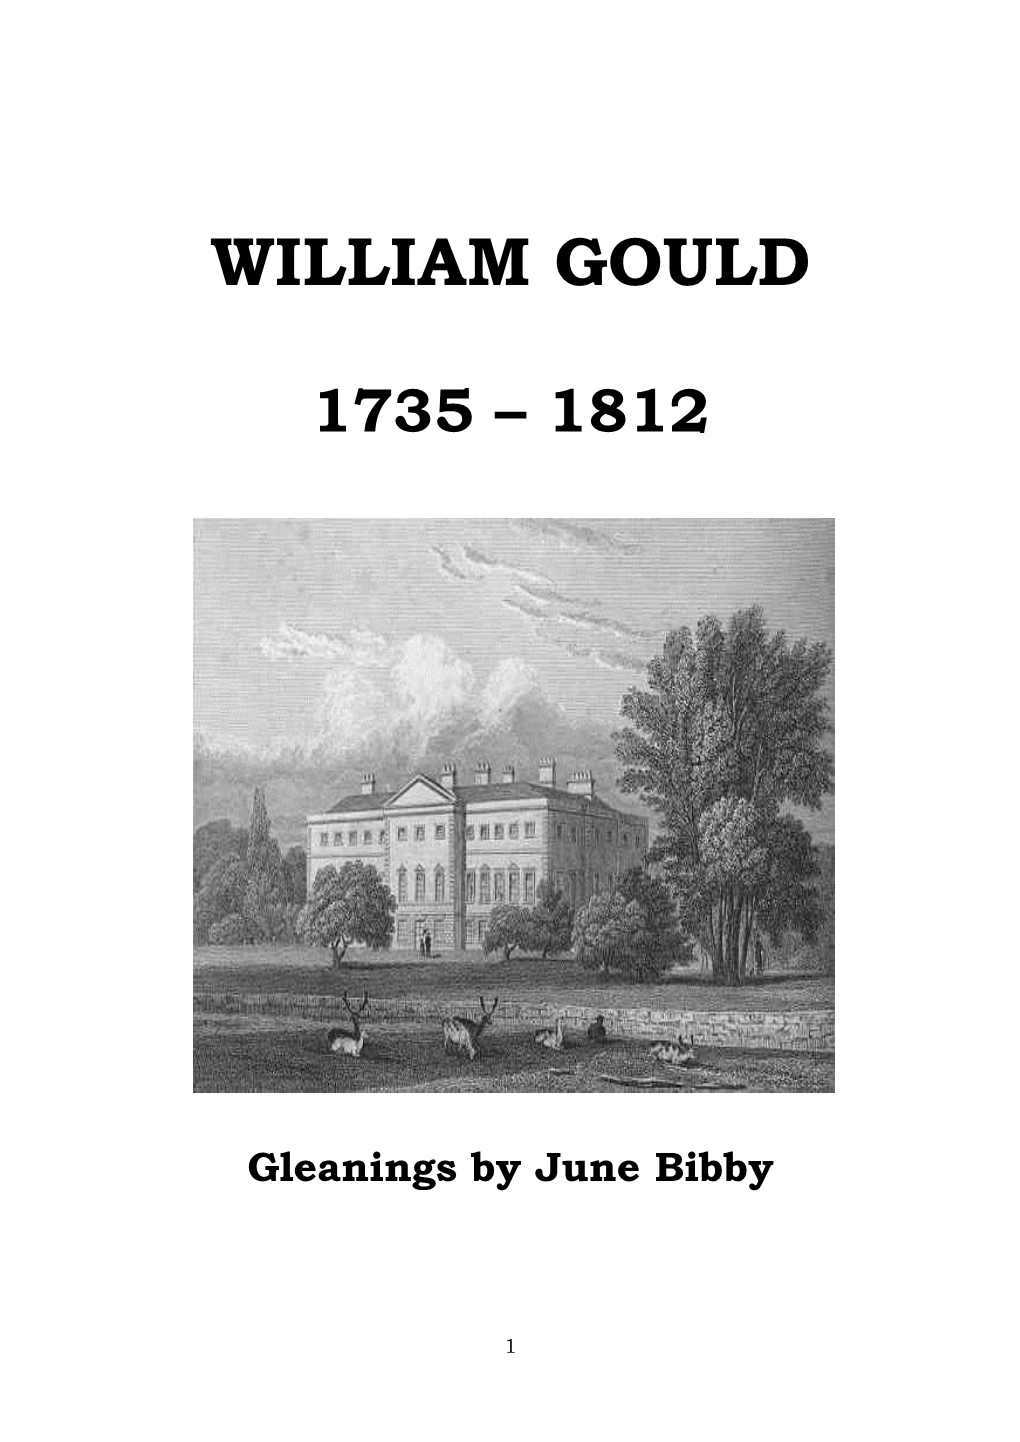 William Gould (1735-1812)